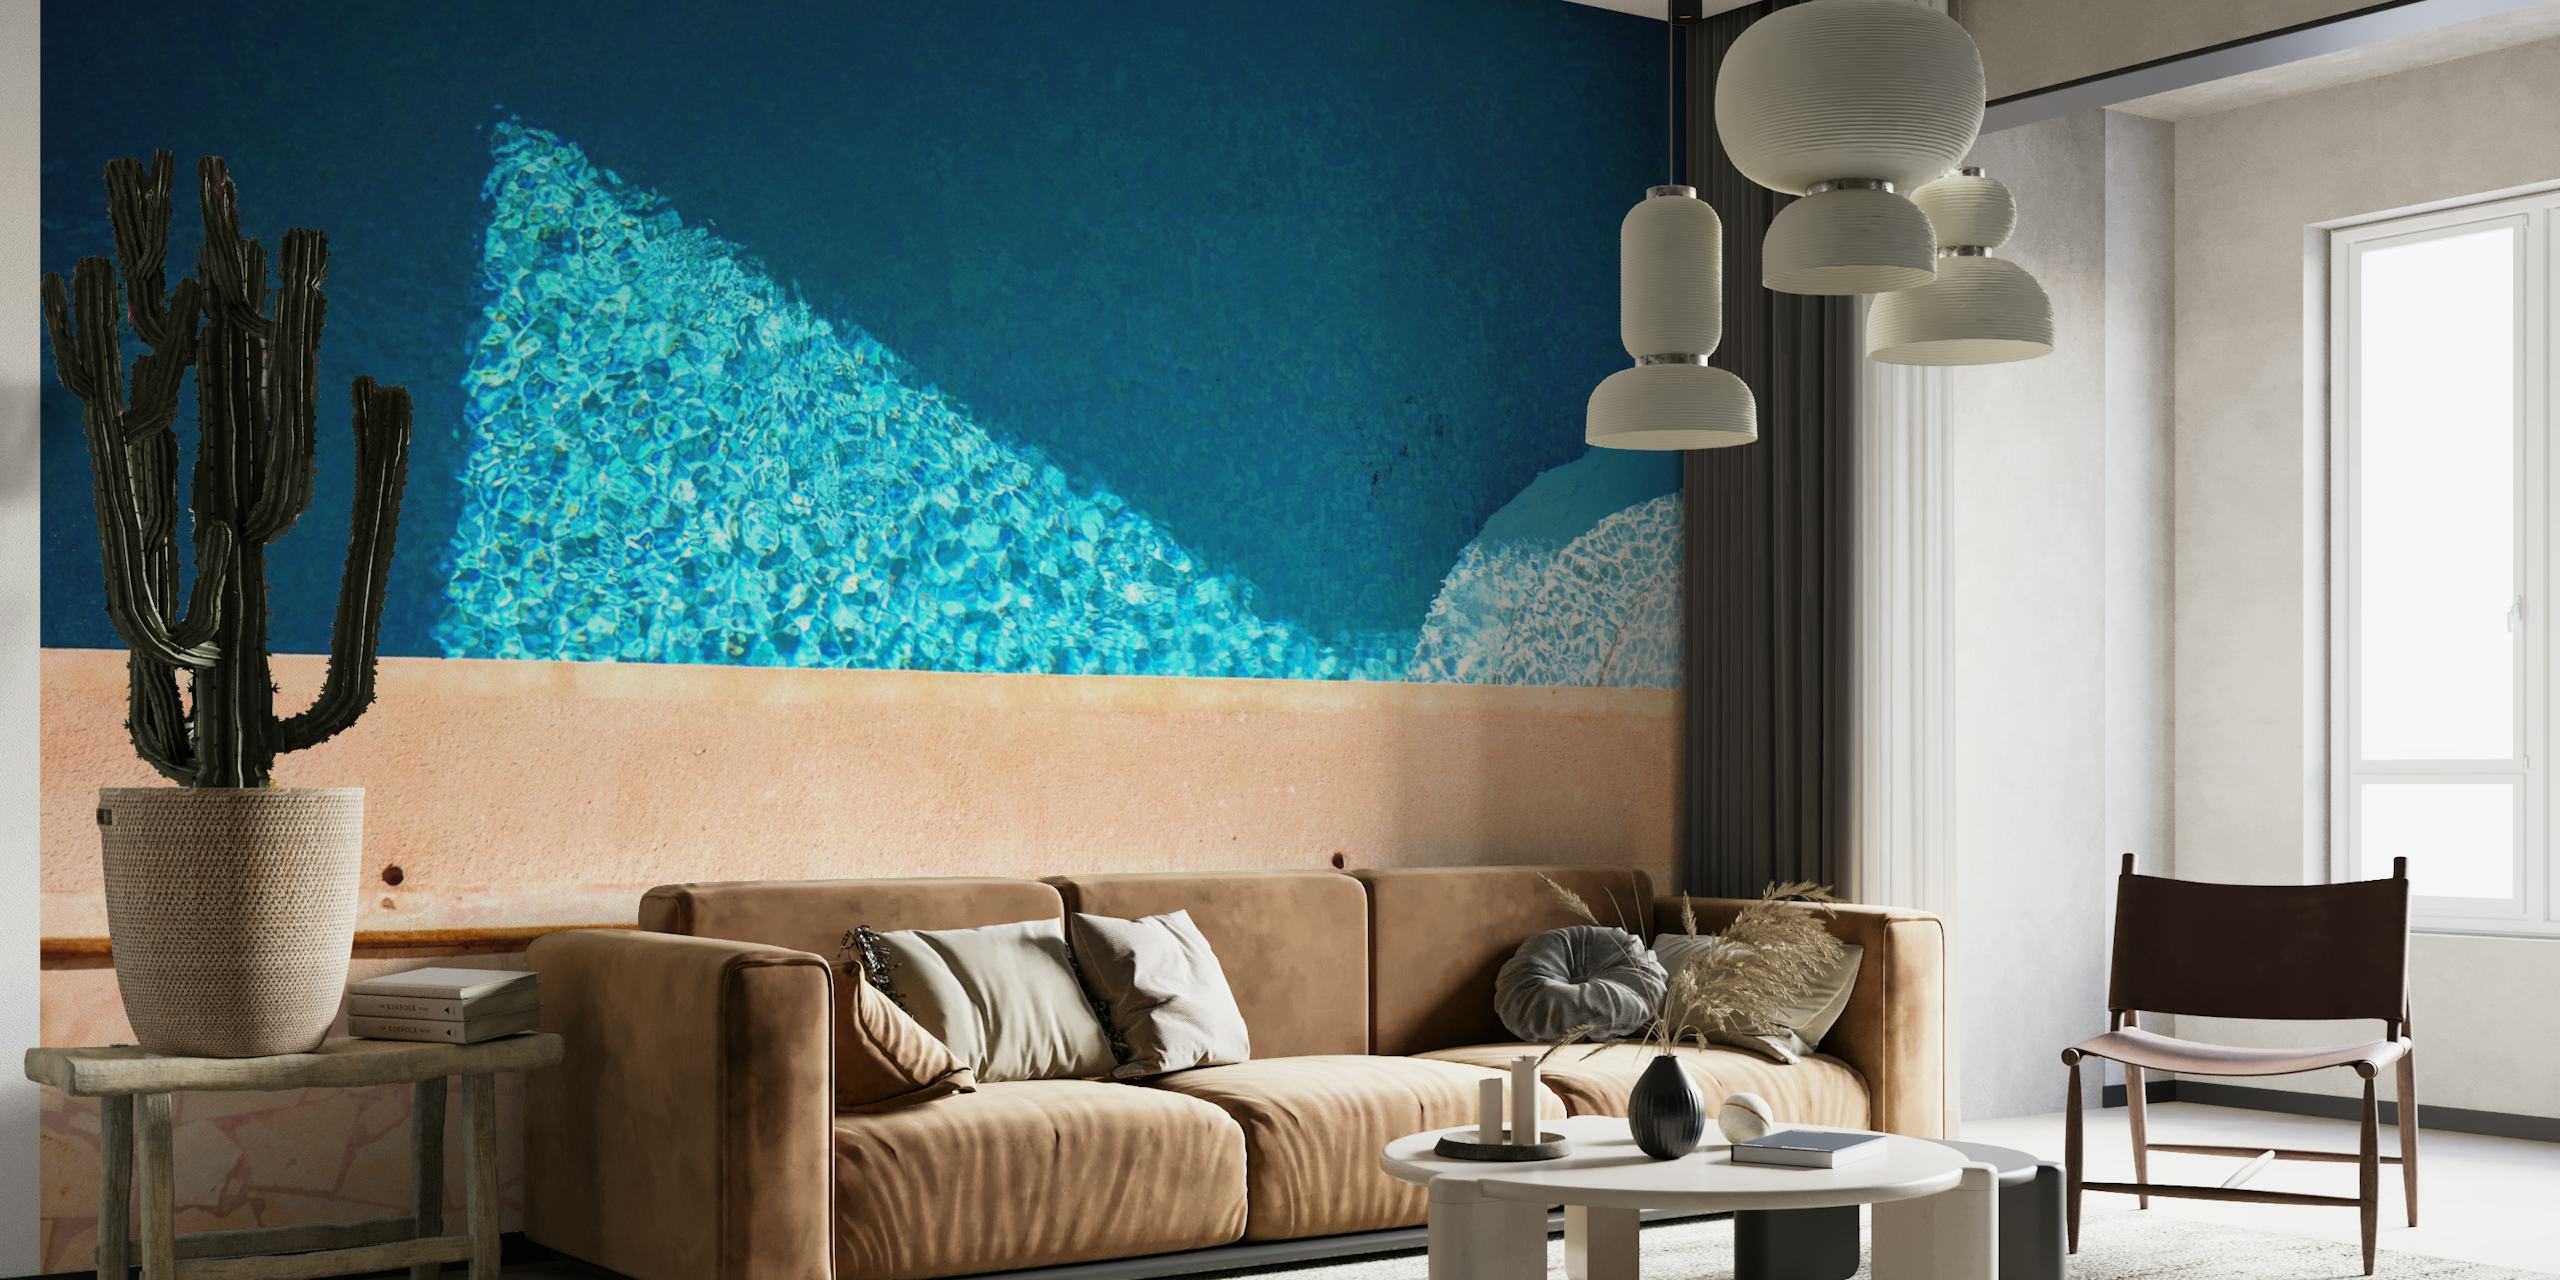 Wandbild „California Pool Dream“, das das kühle blaue Wasser eines Pools mit Terrakottafliesen zeigt